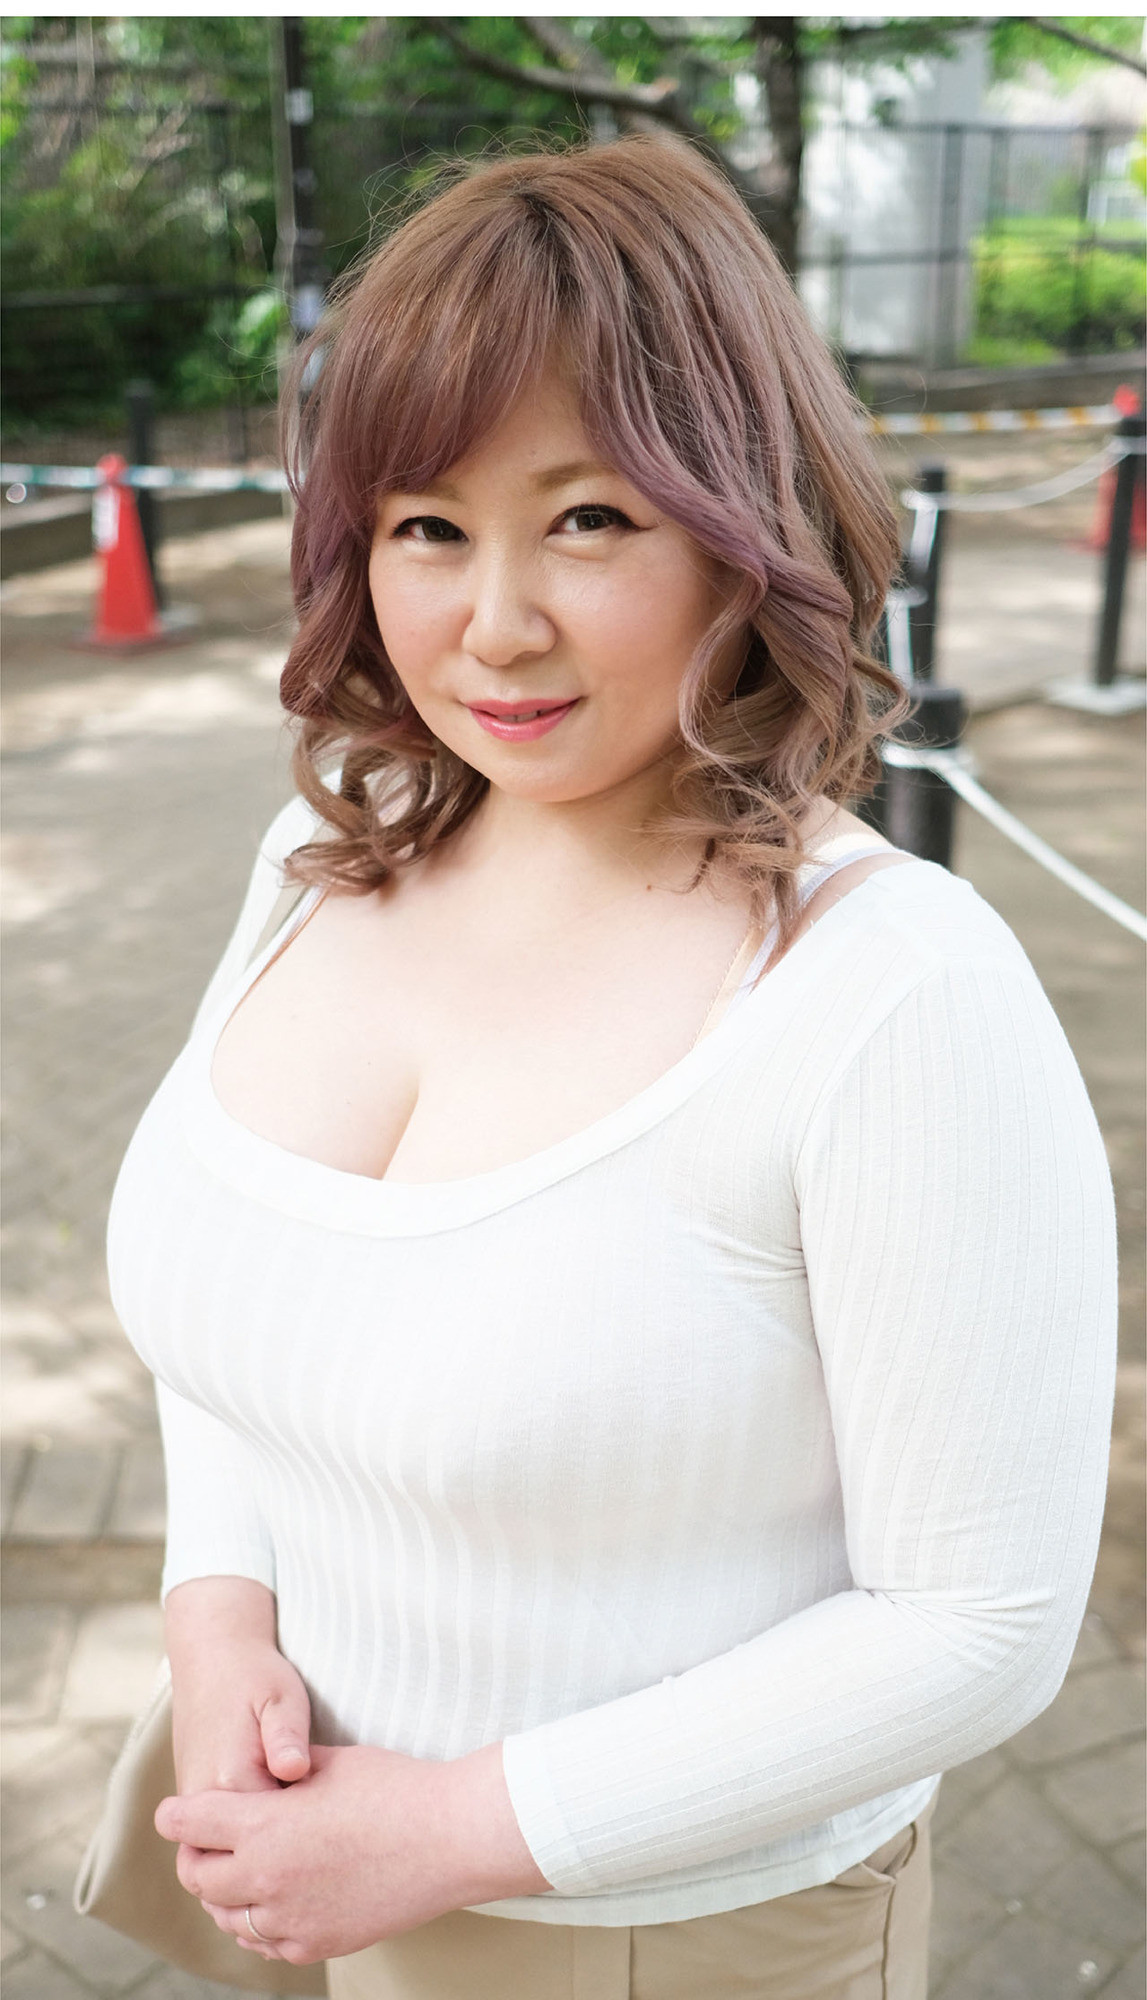 日本で一番ドスケベなおデブさん認定！ぽっちゃり熟女専門店のカリスマ爆乳風俗嬢、痴女りまくり15発射させるプライベート動画公開します。 律子（53歳） 画像2